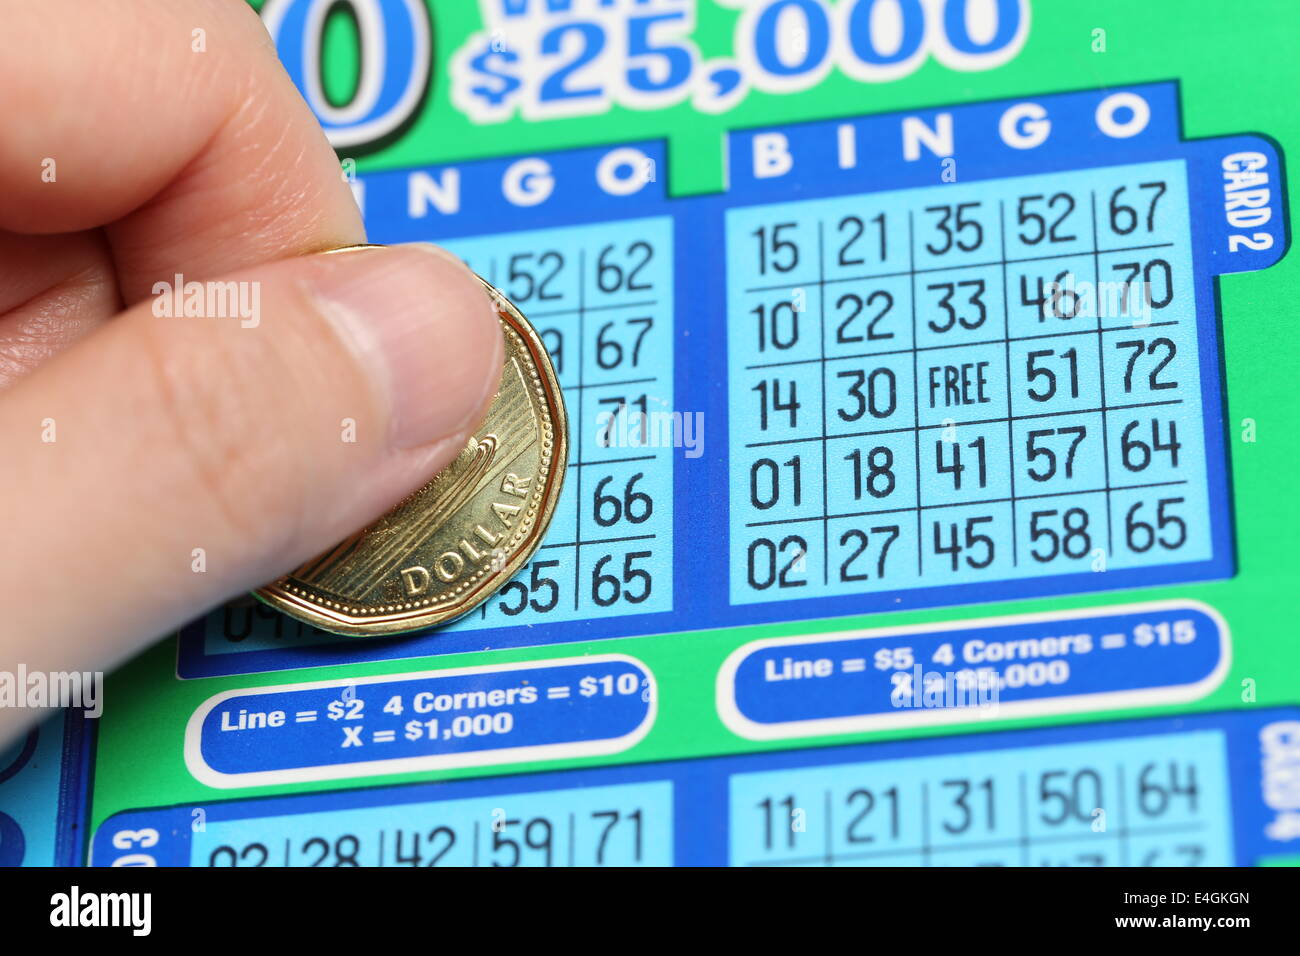 Este es el número de tickets de lotería que deberías comprar si quieres ganar algún premio